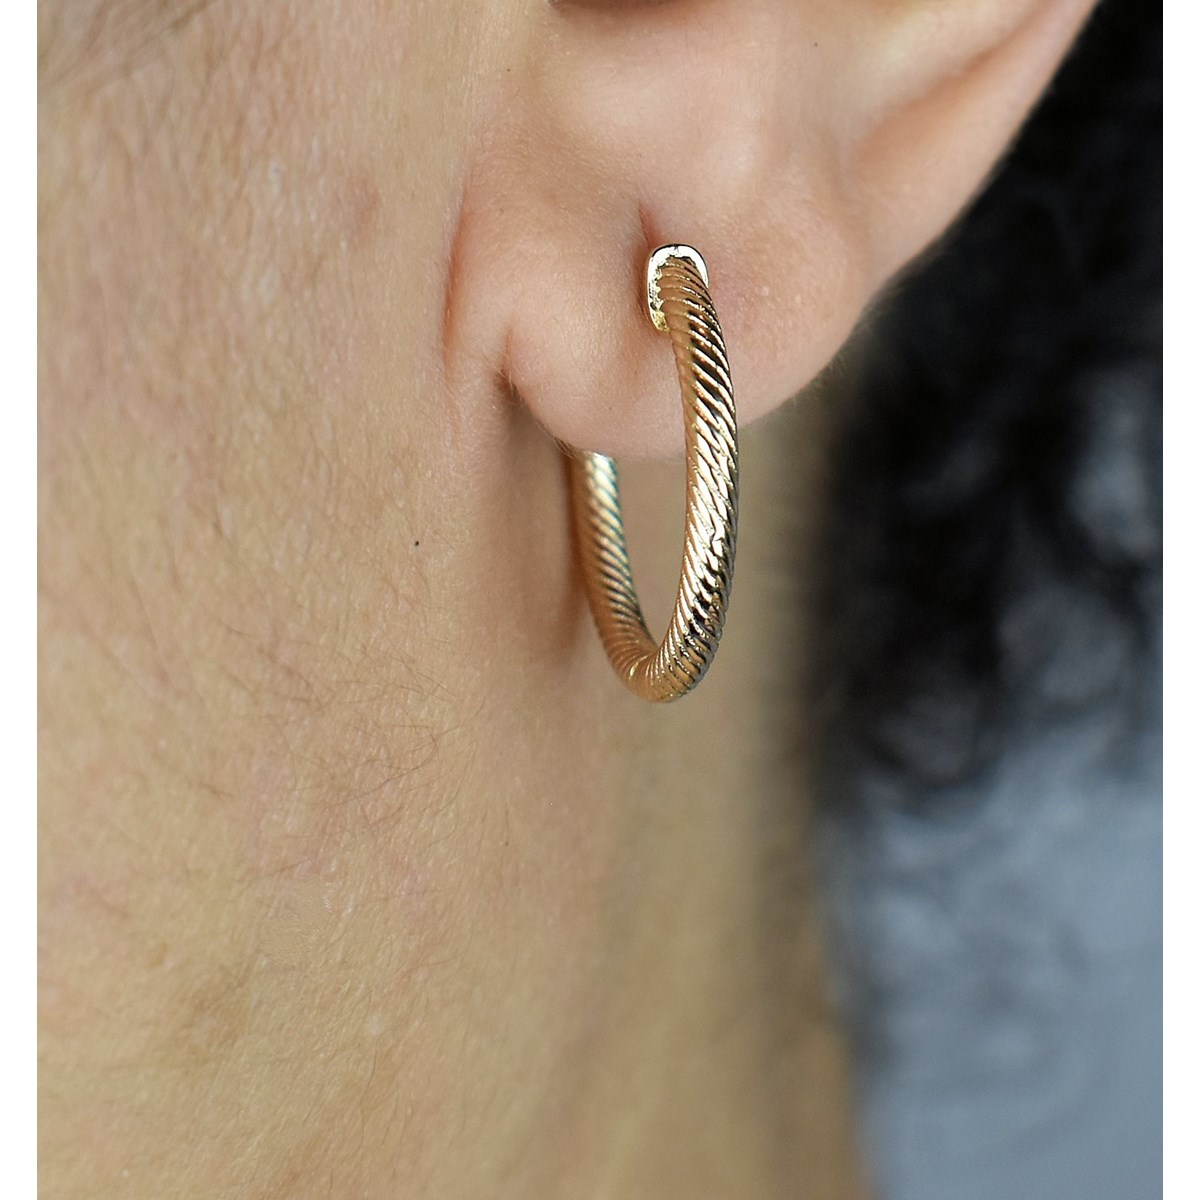 Boucles d'oreilles Créoles effet jonc tressé Plaqué or 750 3 microns - vue 2